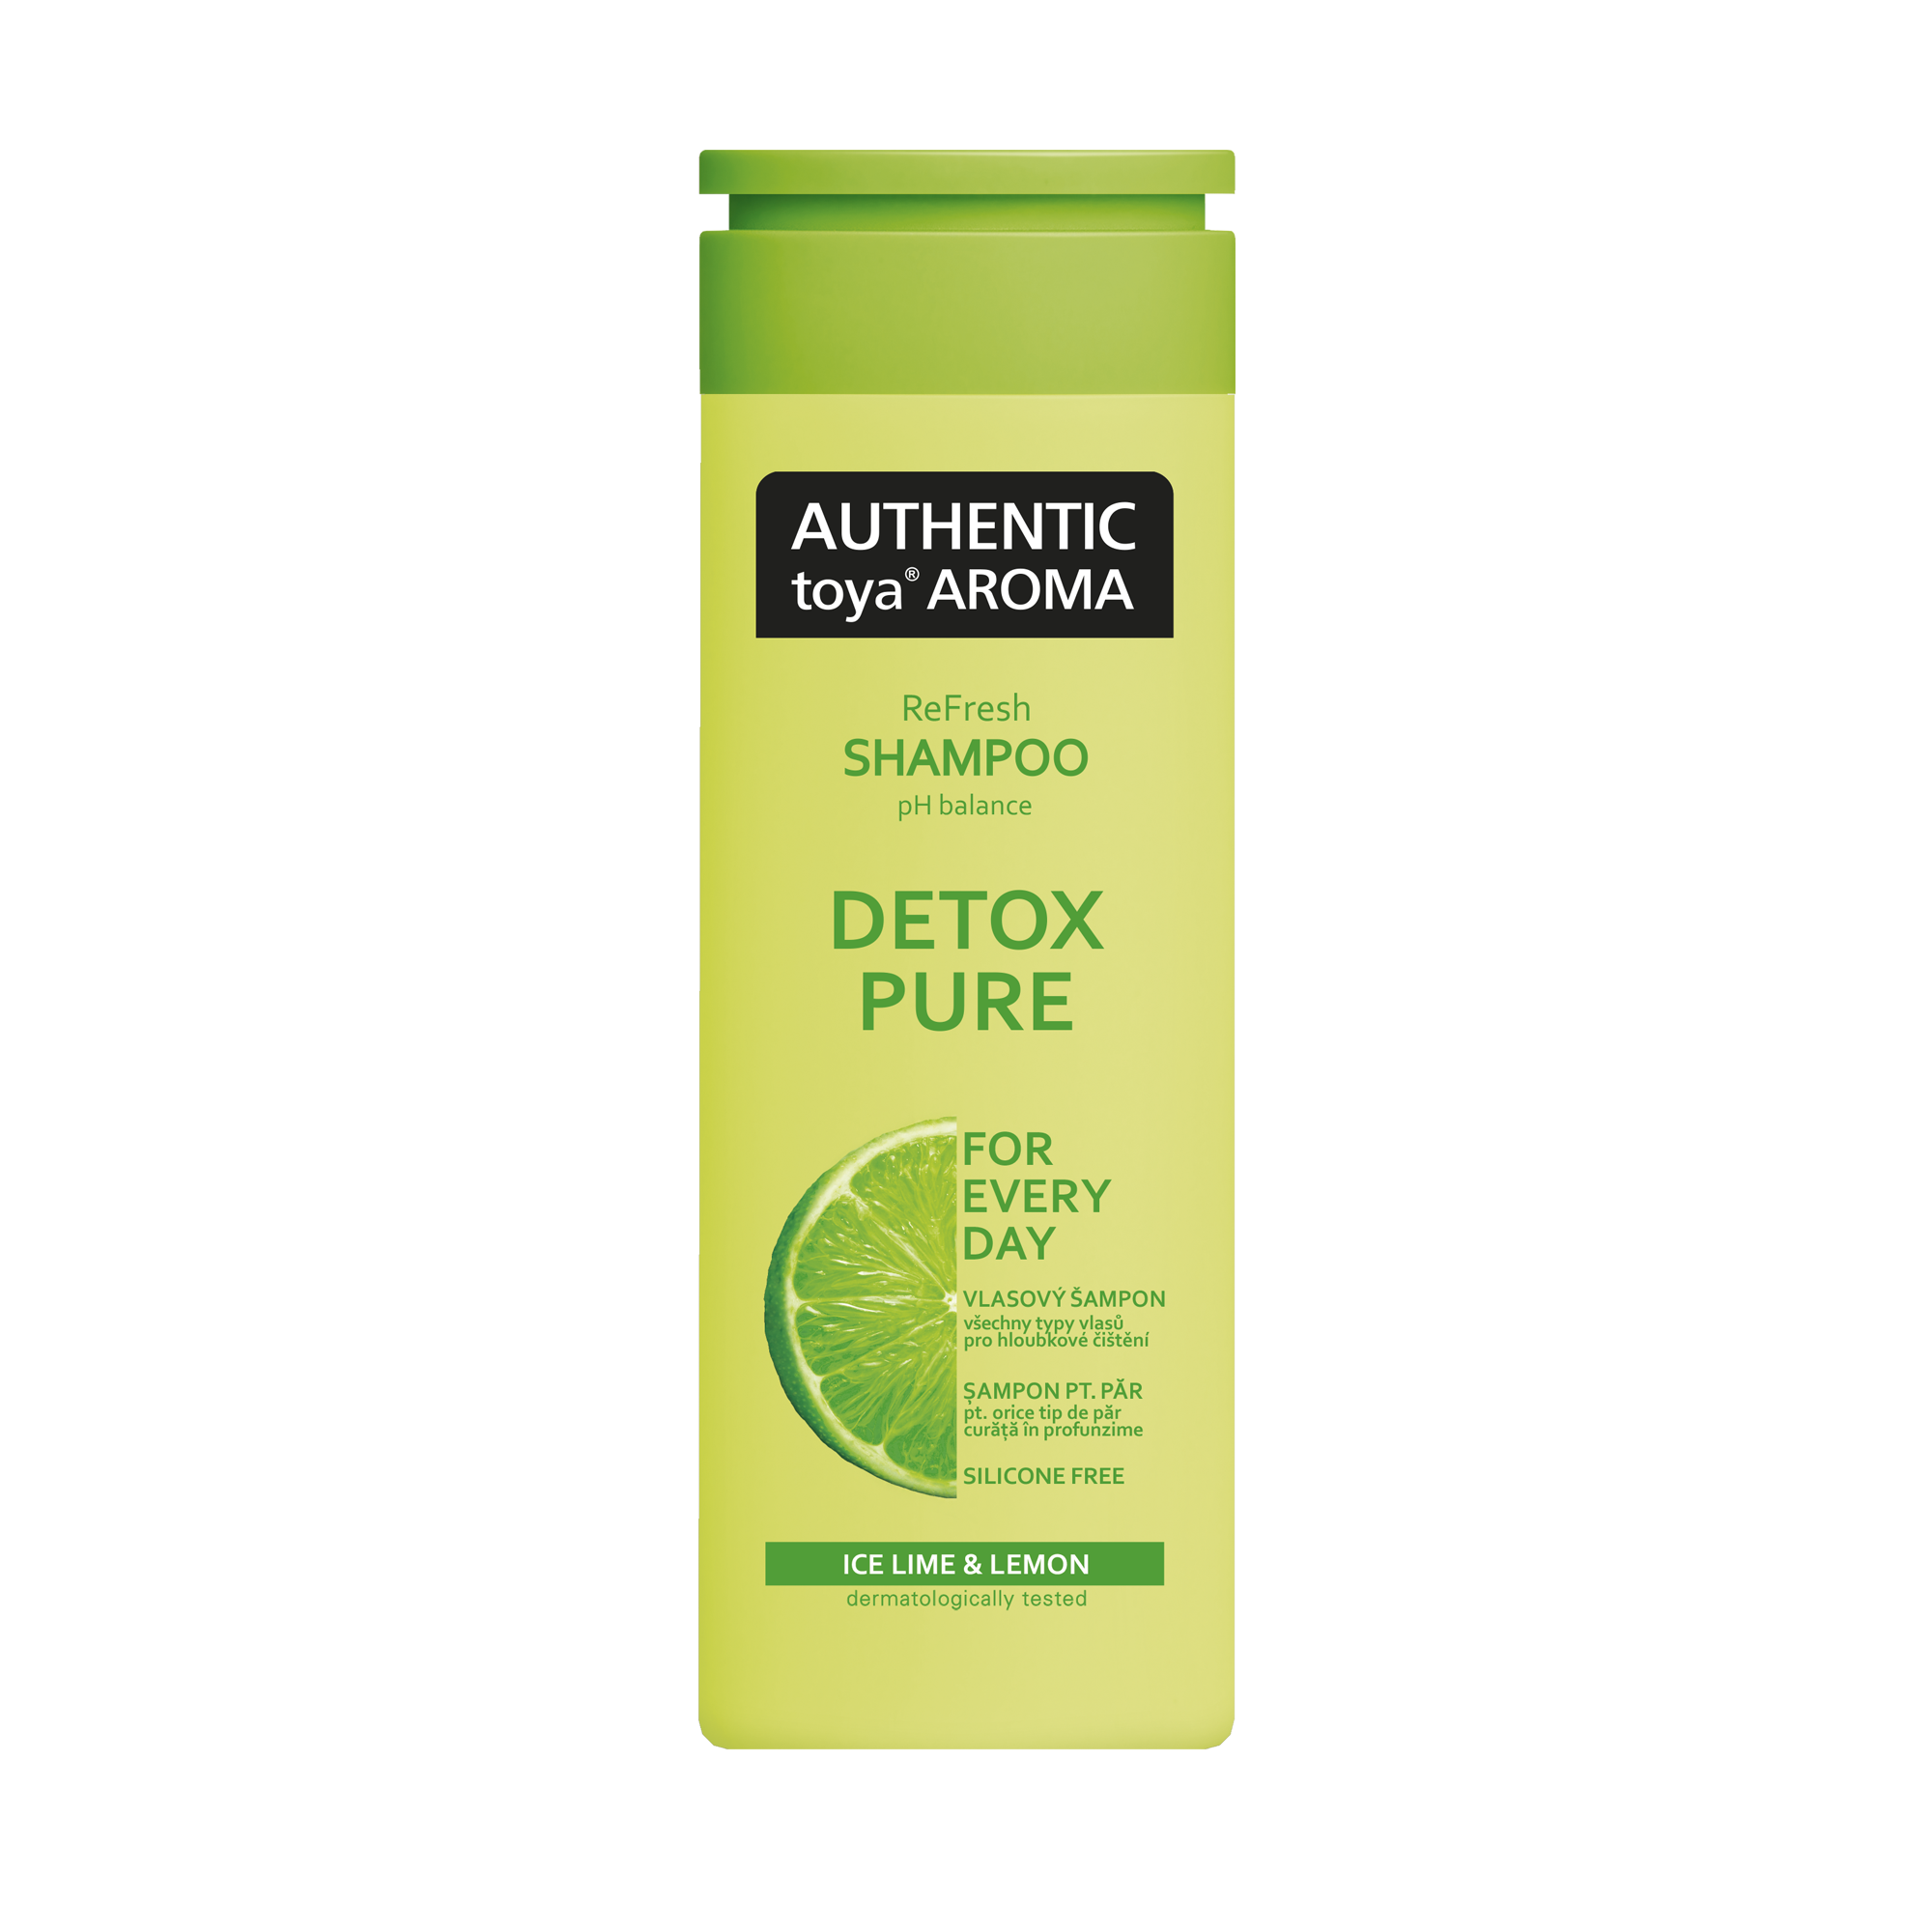 AUTHENTIC toya AROMA șampon de păr Detox Pure